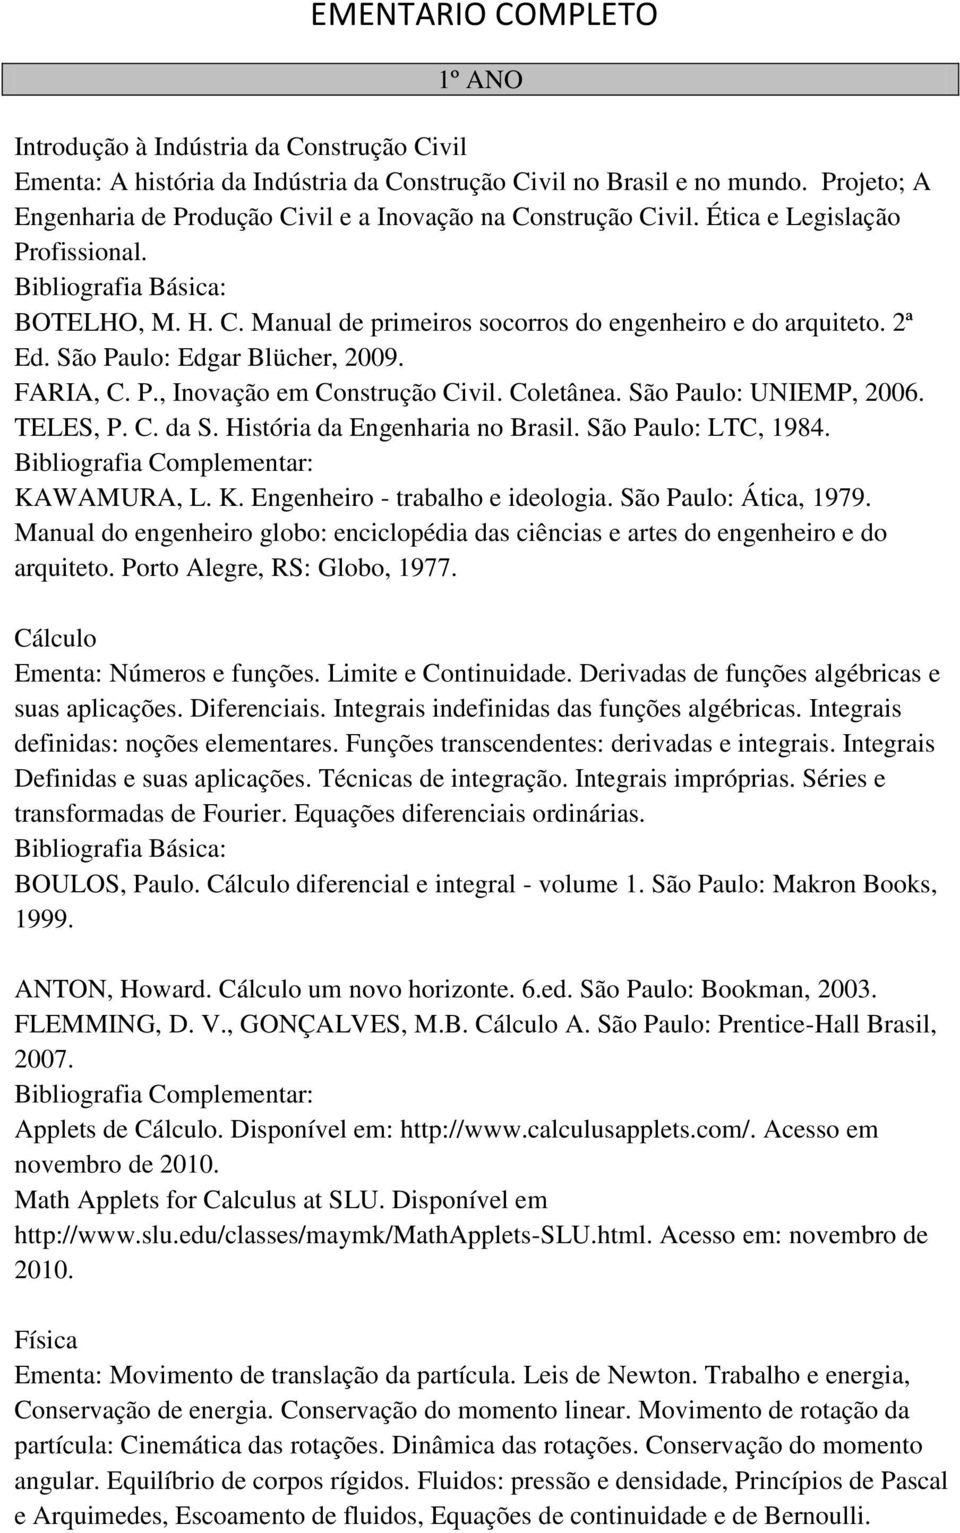 São Paulo: Edgar Blücher, 2009. FARIA, C. P., Inovação em Construção Civil. Coletânea. São Paulo: UNIEMP, 2006. TELES, P. C. da S. História da Engenharia no Brasil. São Paulo: LTC, 1984. KAWAMURA, L.